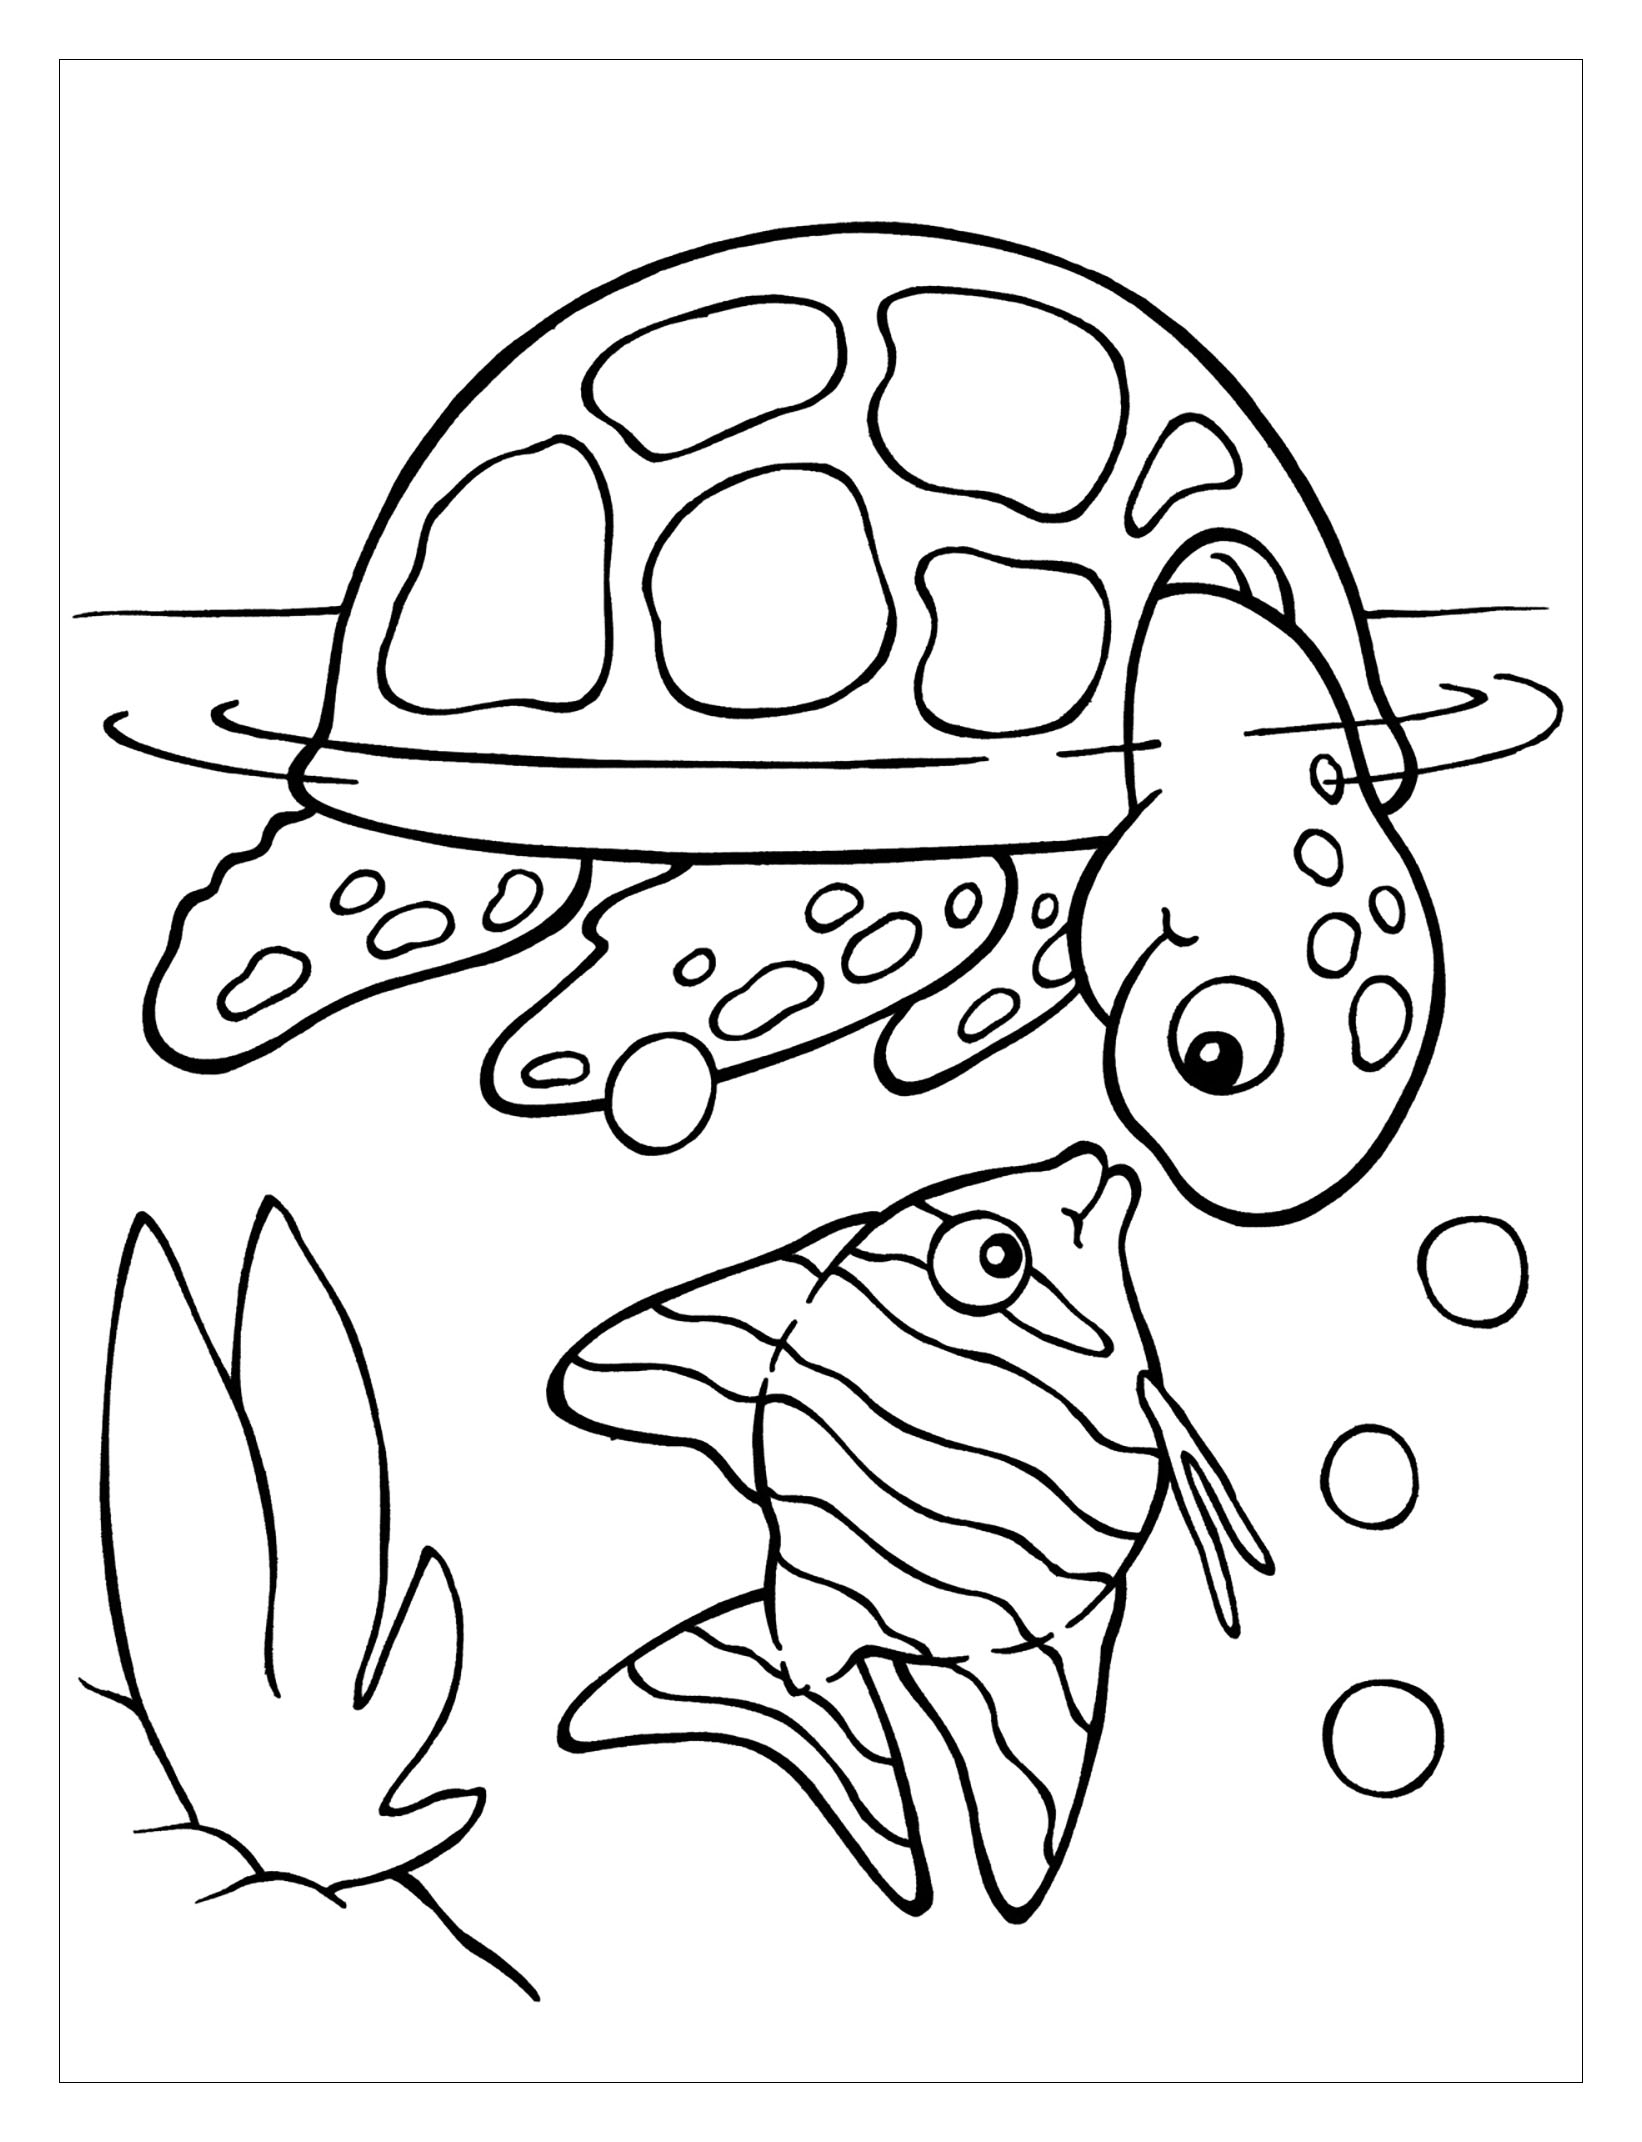 Dibujo de tortuga para imprimir y colorear